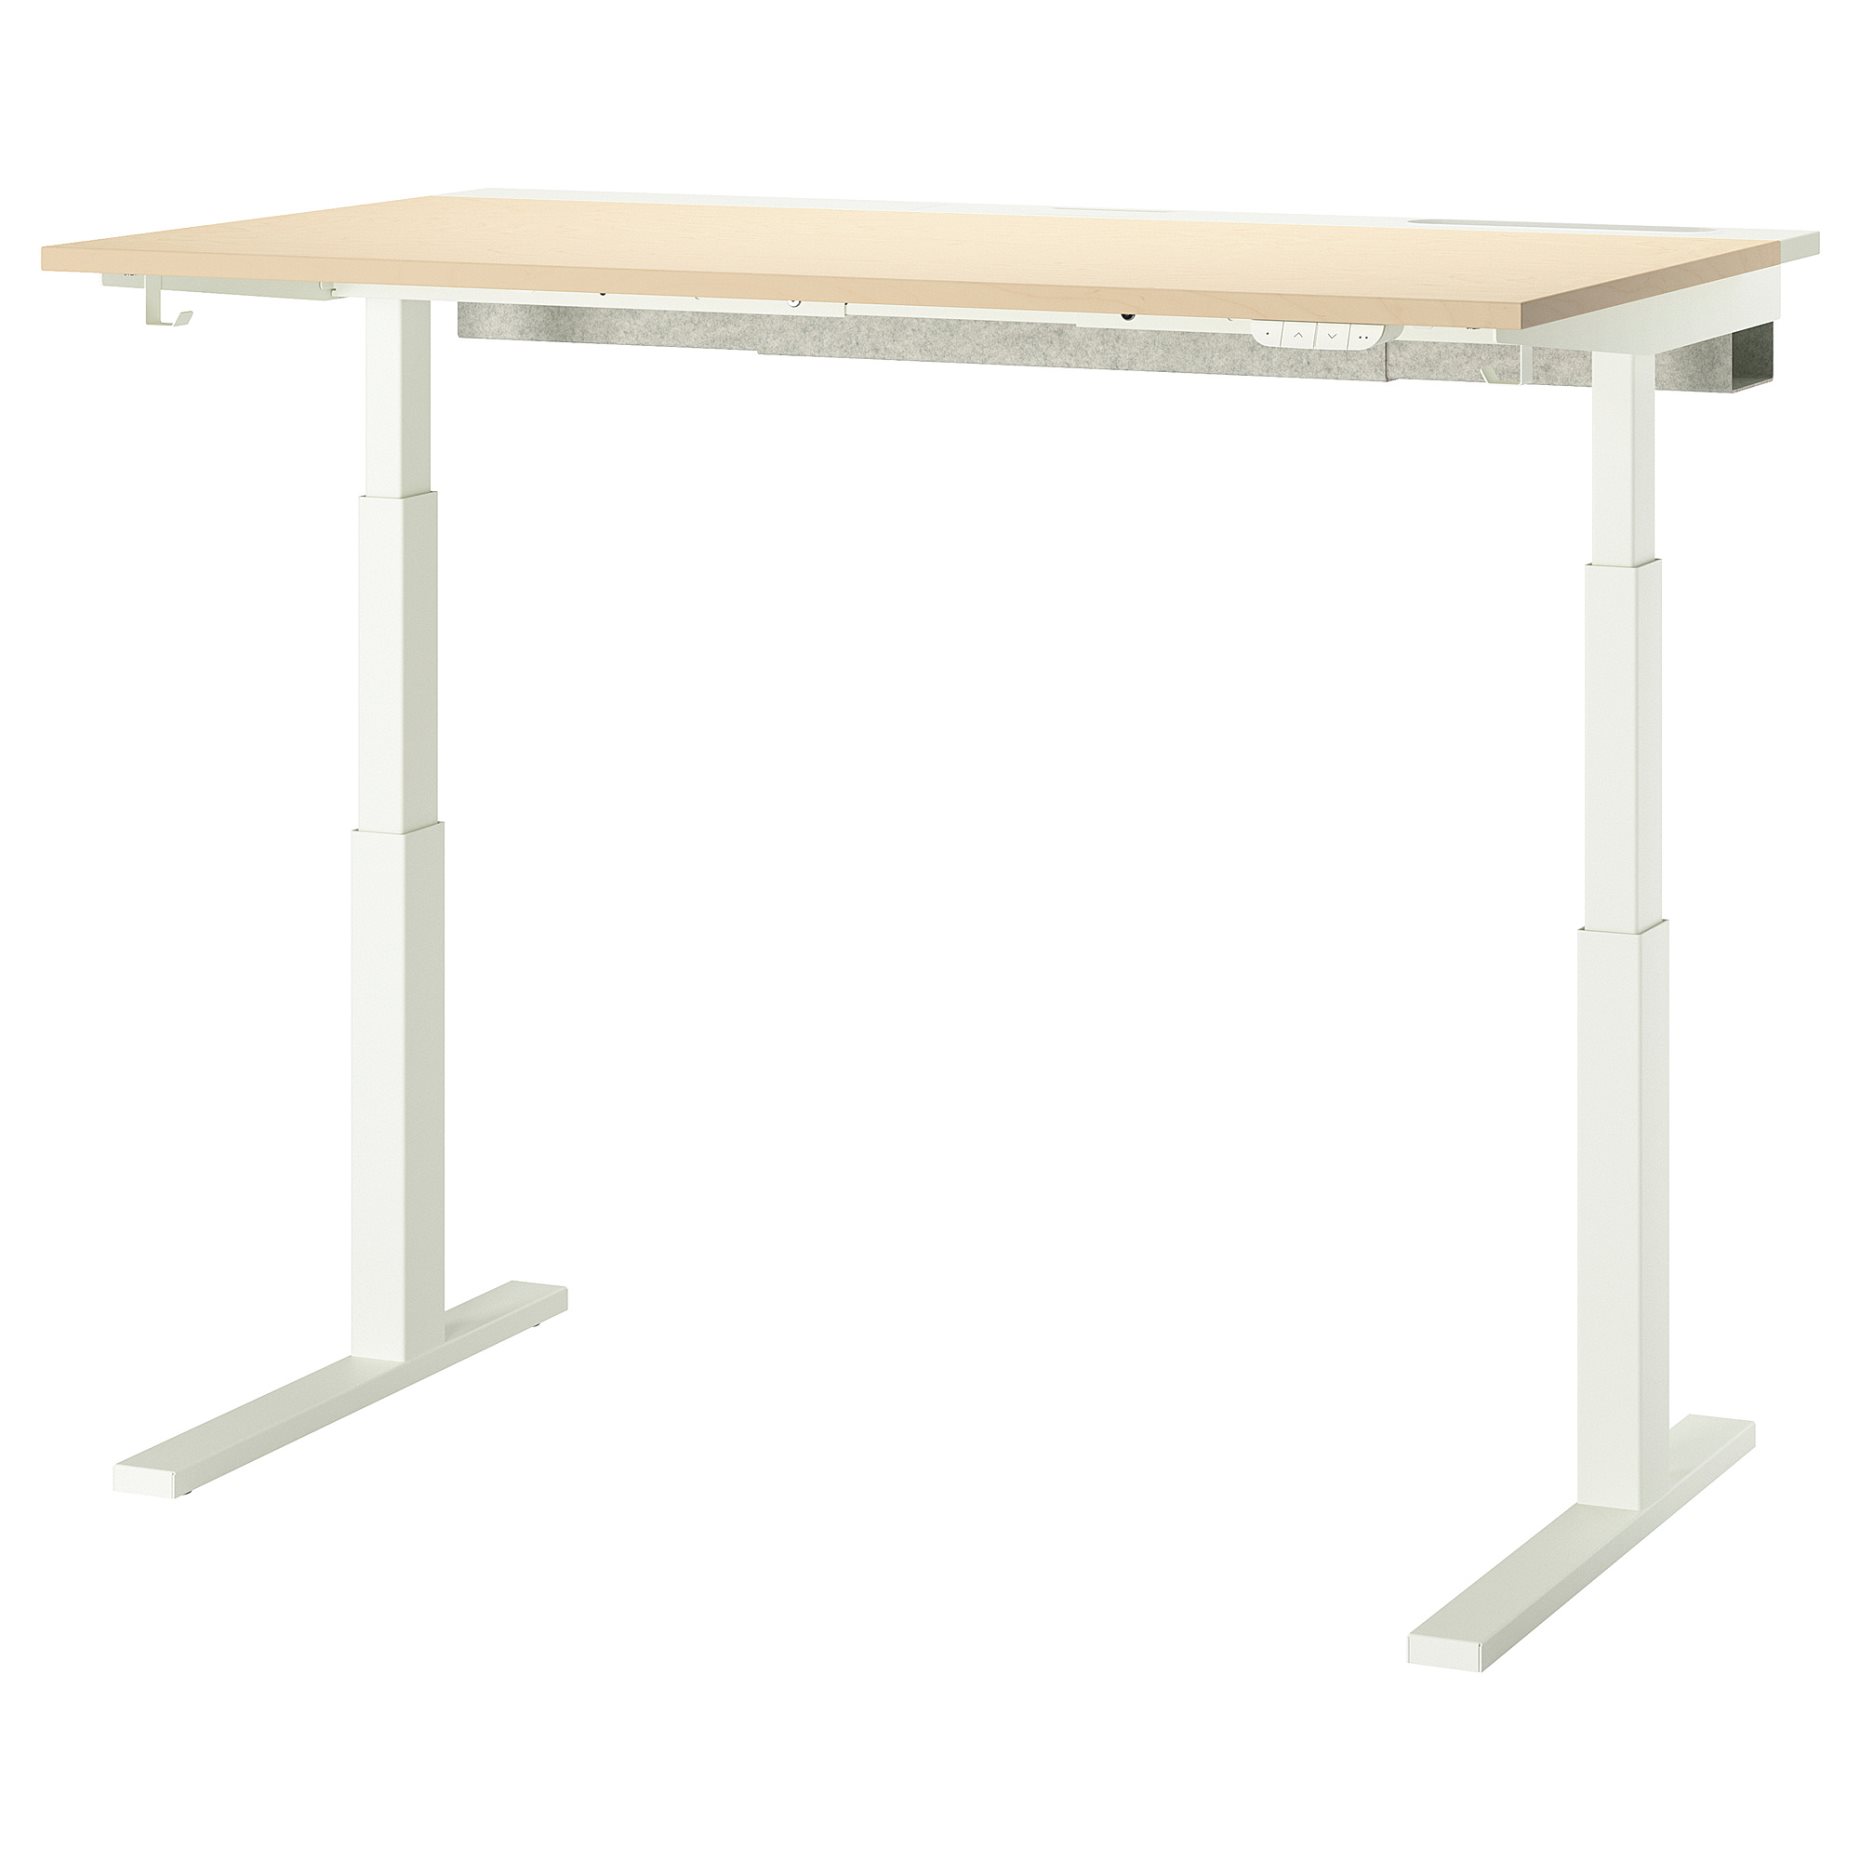 MITTZON, table top, 140x68 cm, 505.277.59